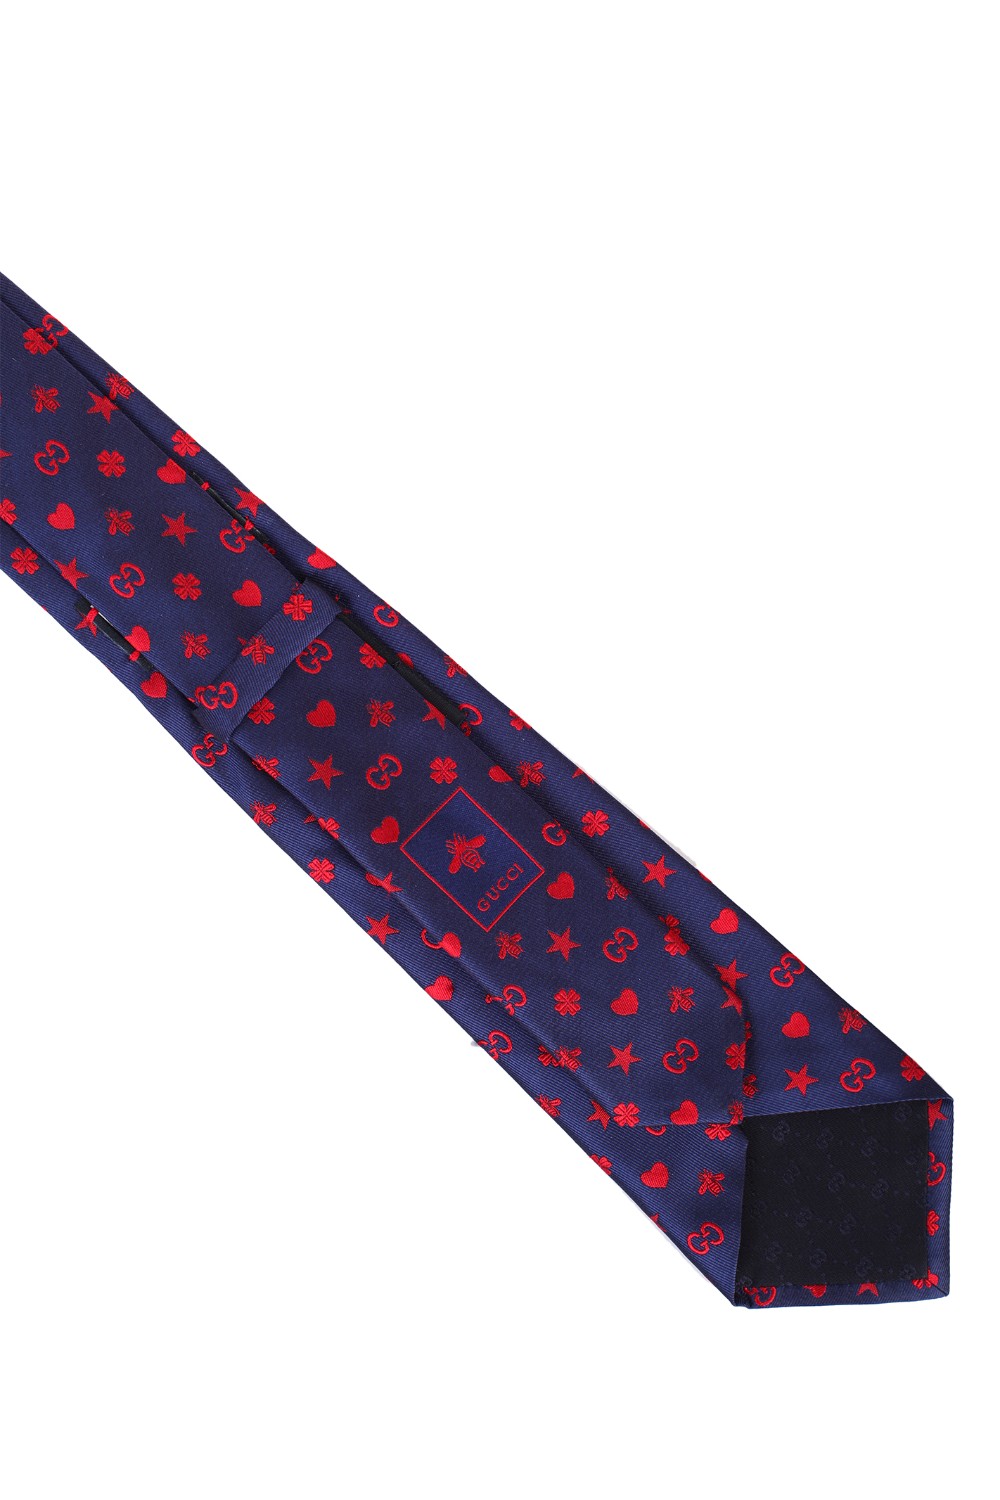 shop GUCCI Saldi Cravatta: Gucci cravatta in seta blu con motivo GG, Api, Cuori e Stelle.
Dimensioni: L 7cm x A 146cm.
Composizione: 100% seta.
Made in Italy.. 545834 4E017-4174 number 3808659